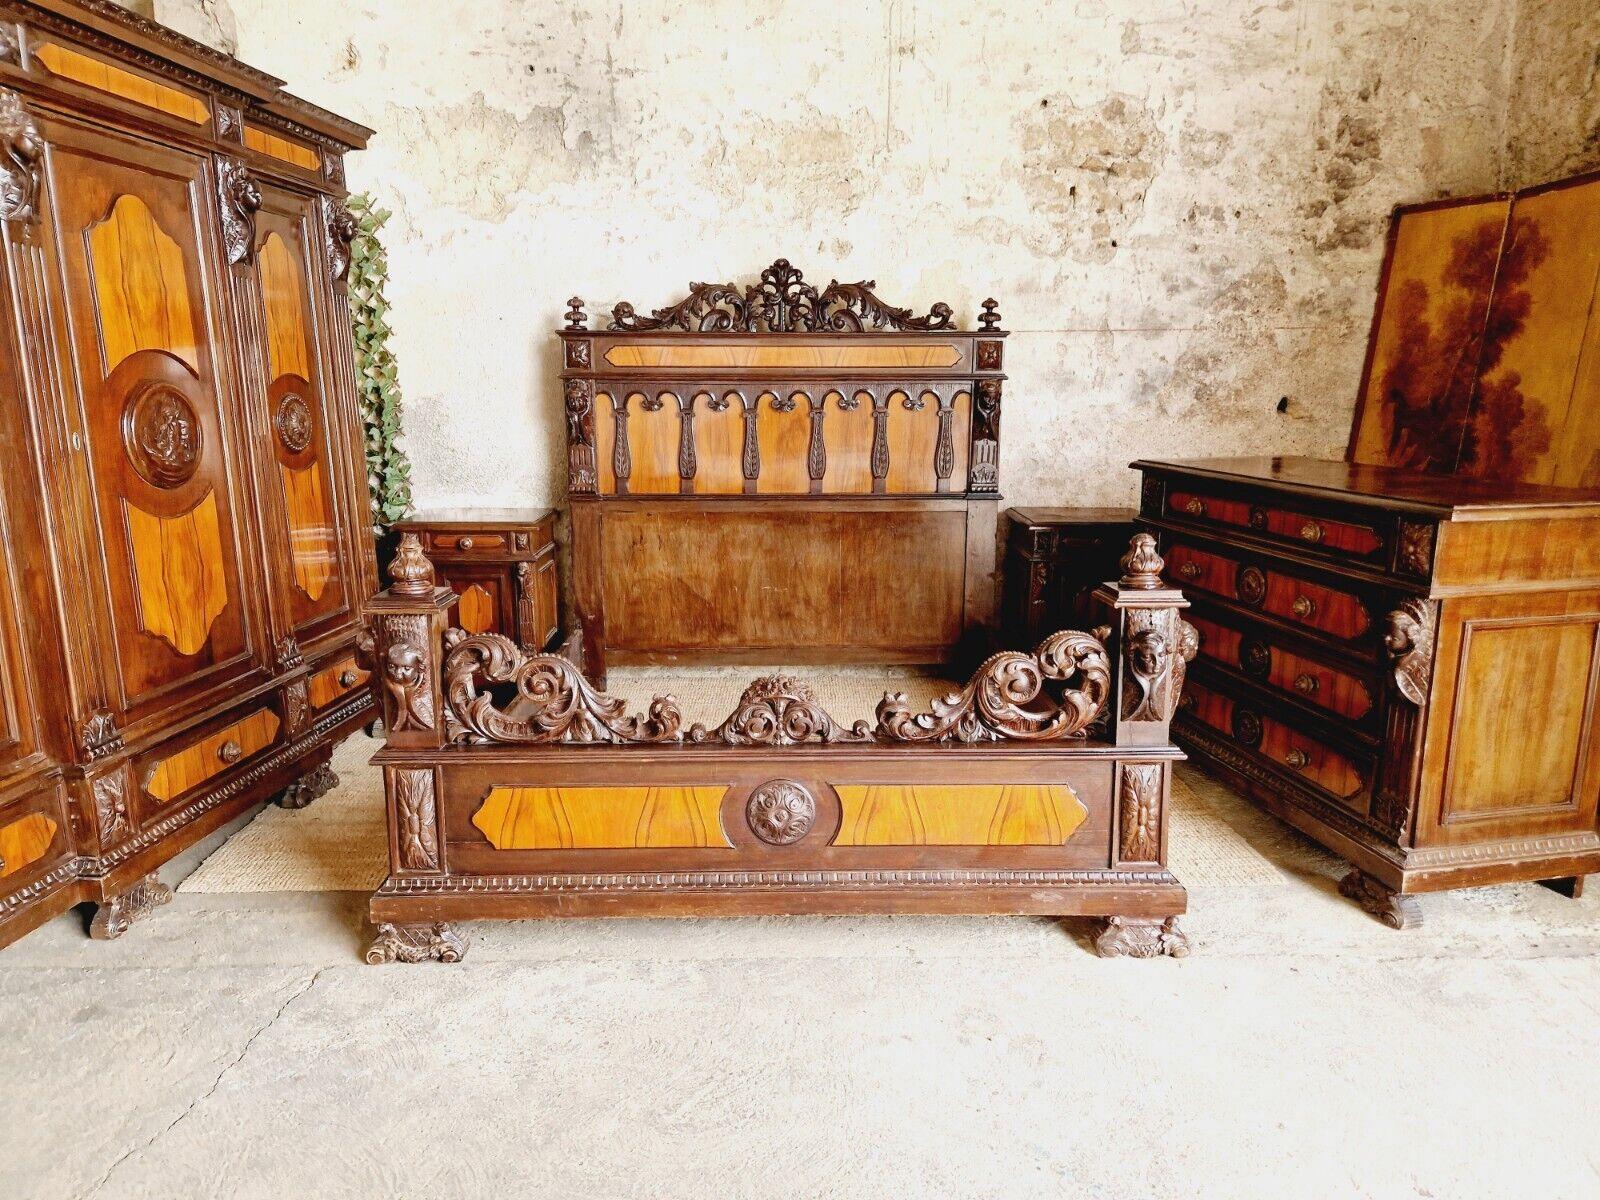 Dieses exquisite 5-teilige Schlafzimmerset besteht aus einem prächtigen Kingsize-Bett mit einem beeindruckenden Kopf- und Fußteil im Renaissance-Stil, das aus schönem Mahagoniholz gefertigt ist. Das Bett hat eine fabelhafte geschnitzte Putten